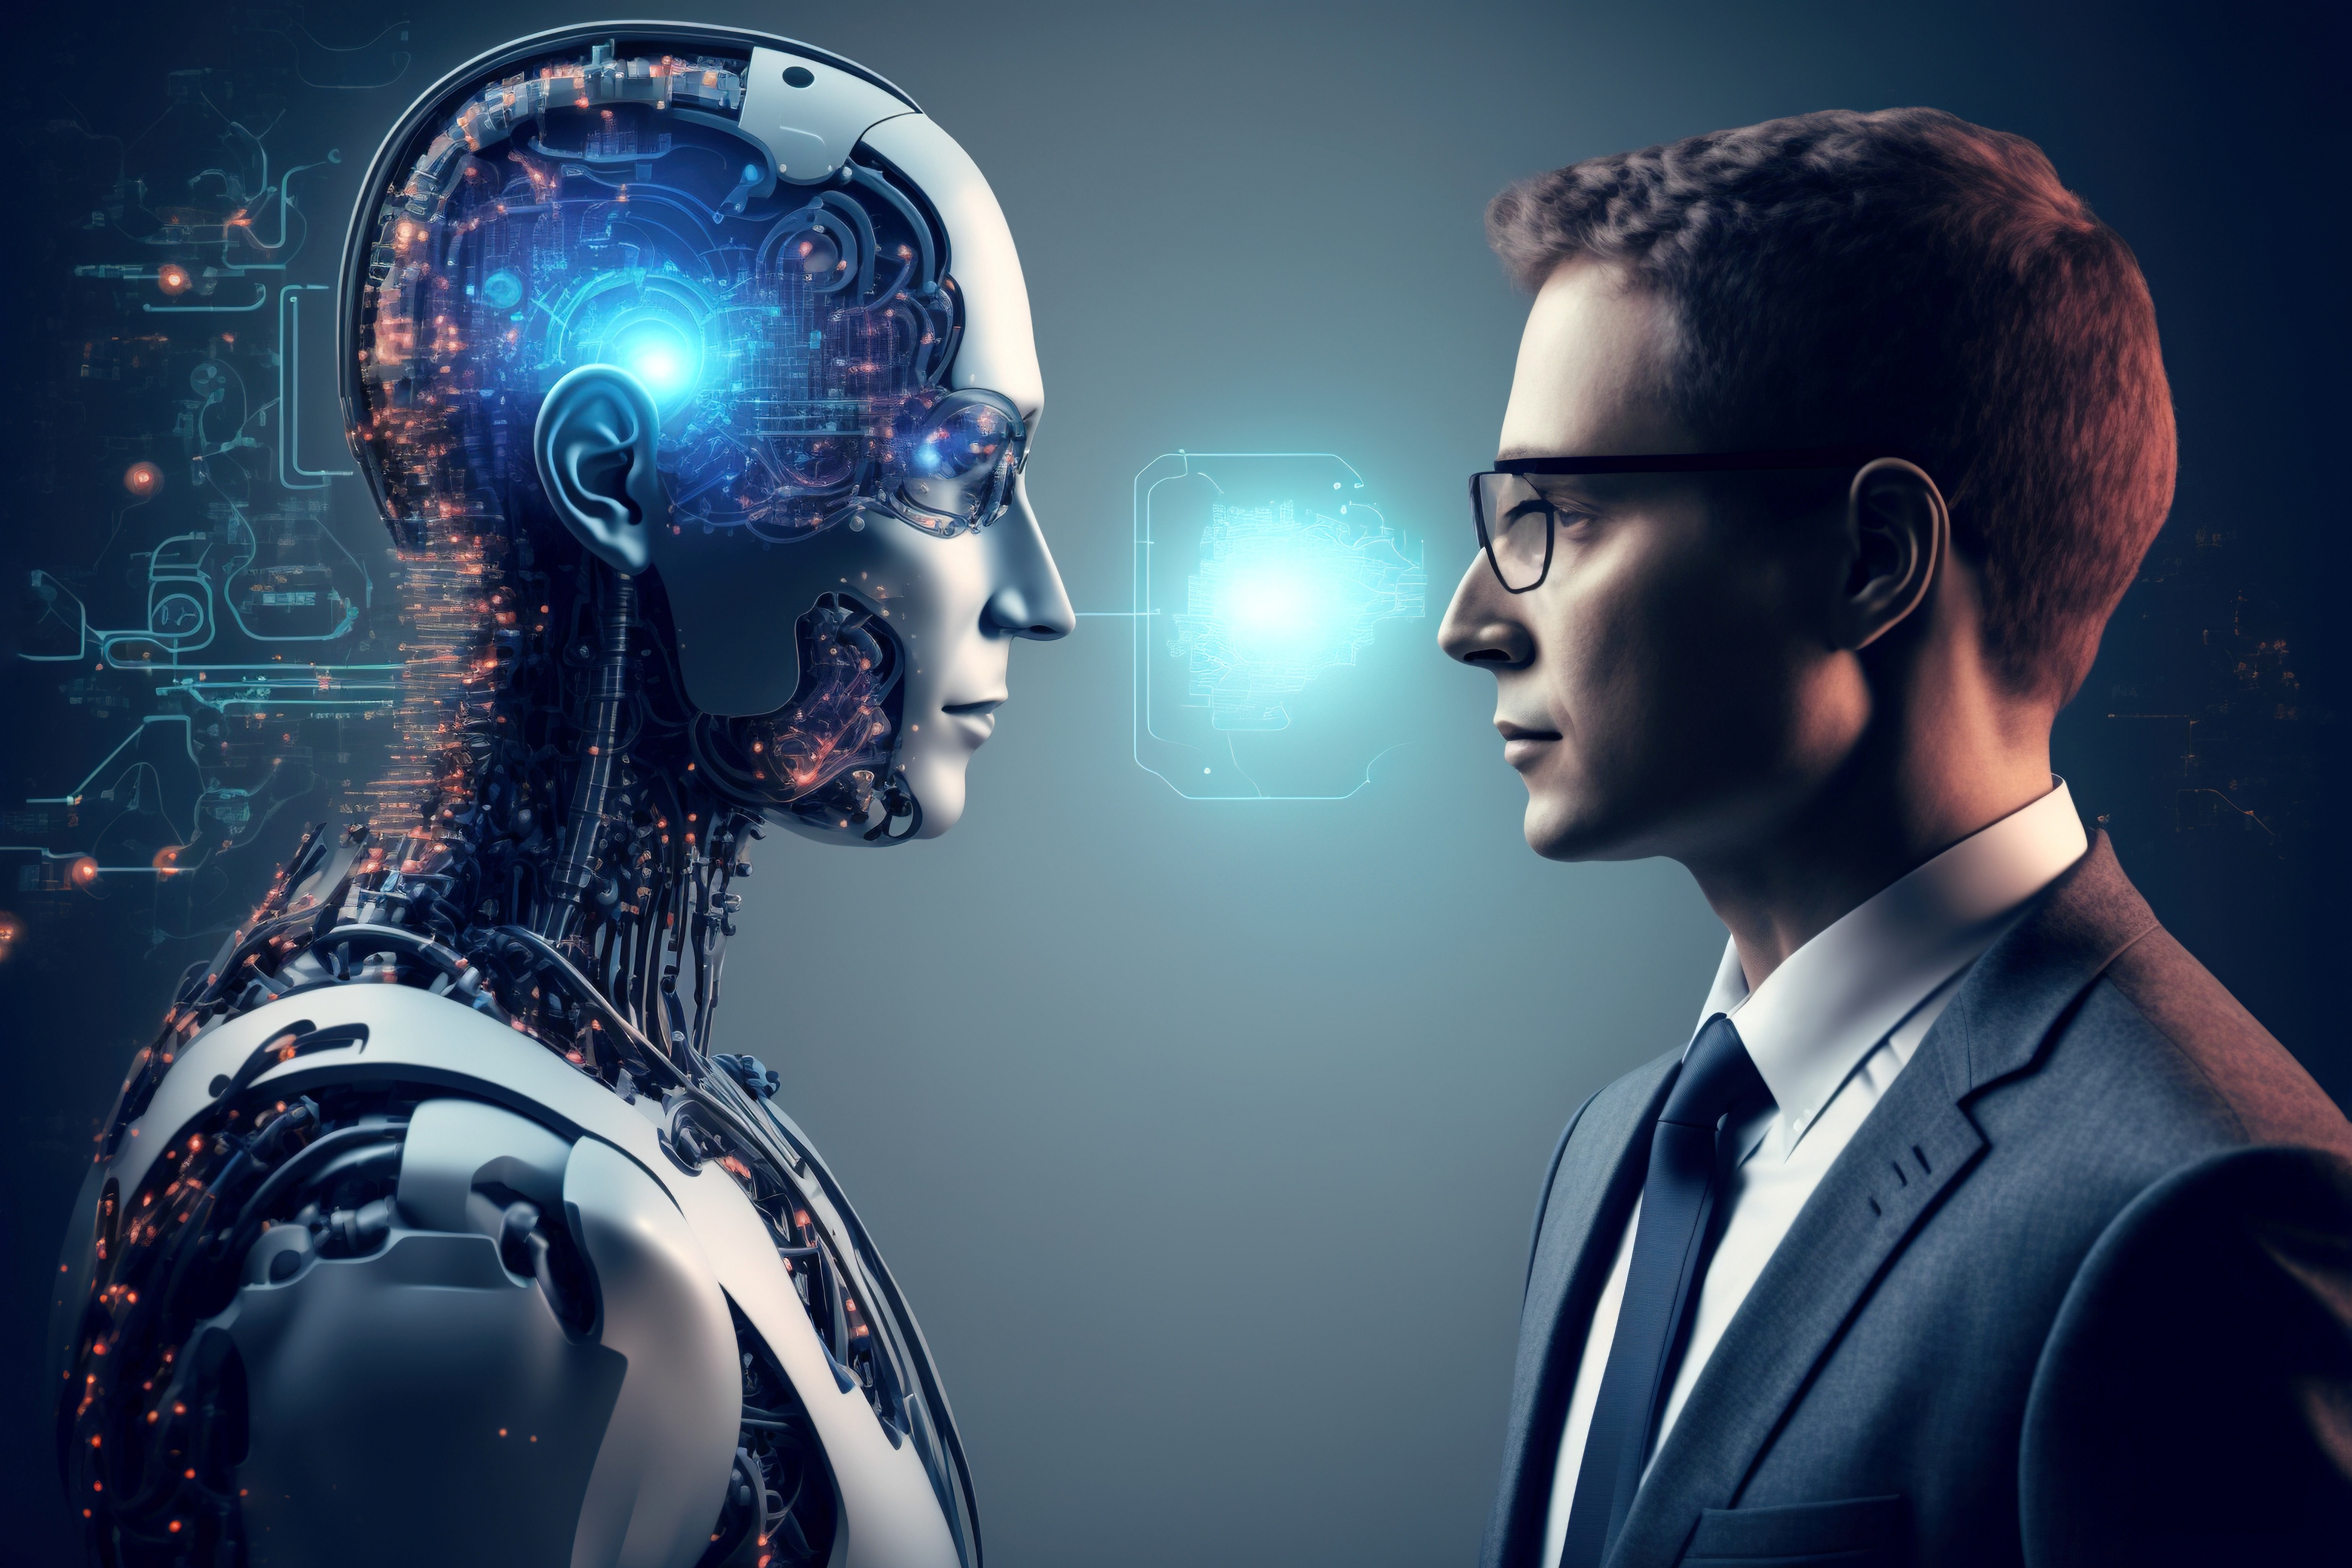 Mann i dress står foran en AI generert robot. Foto.